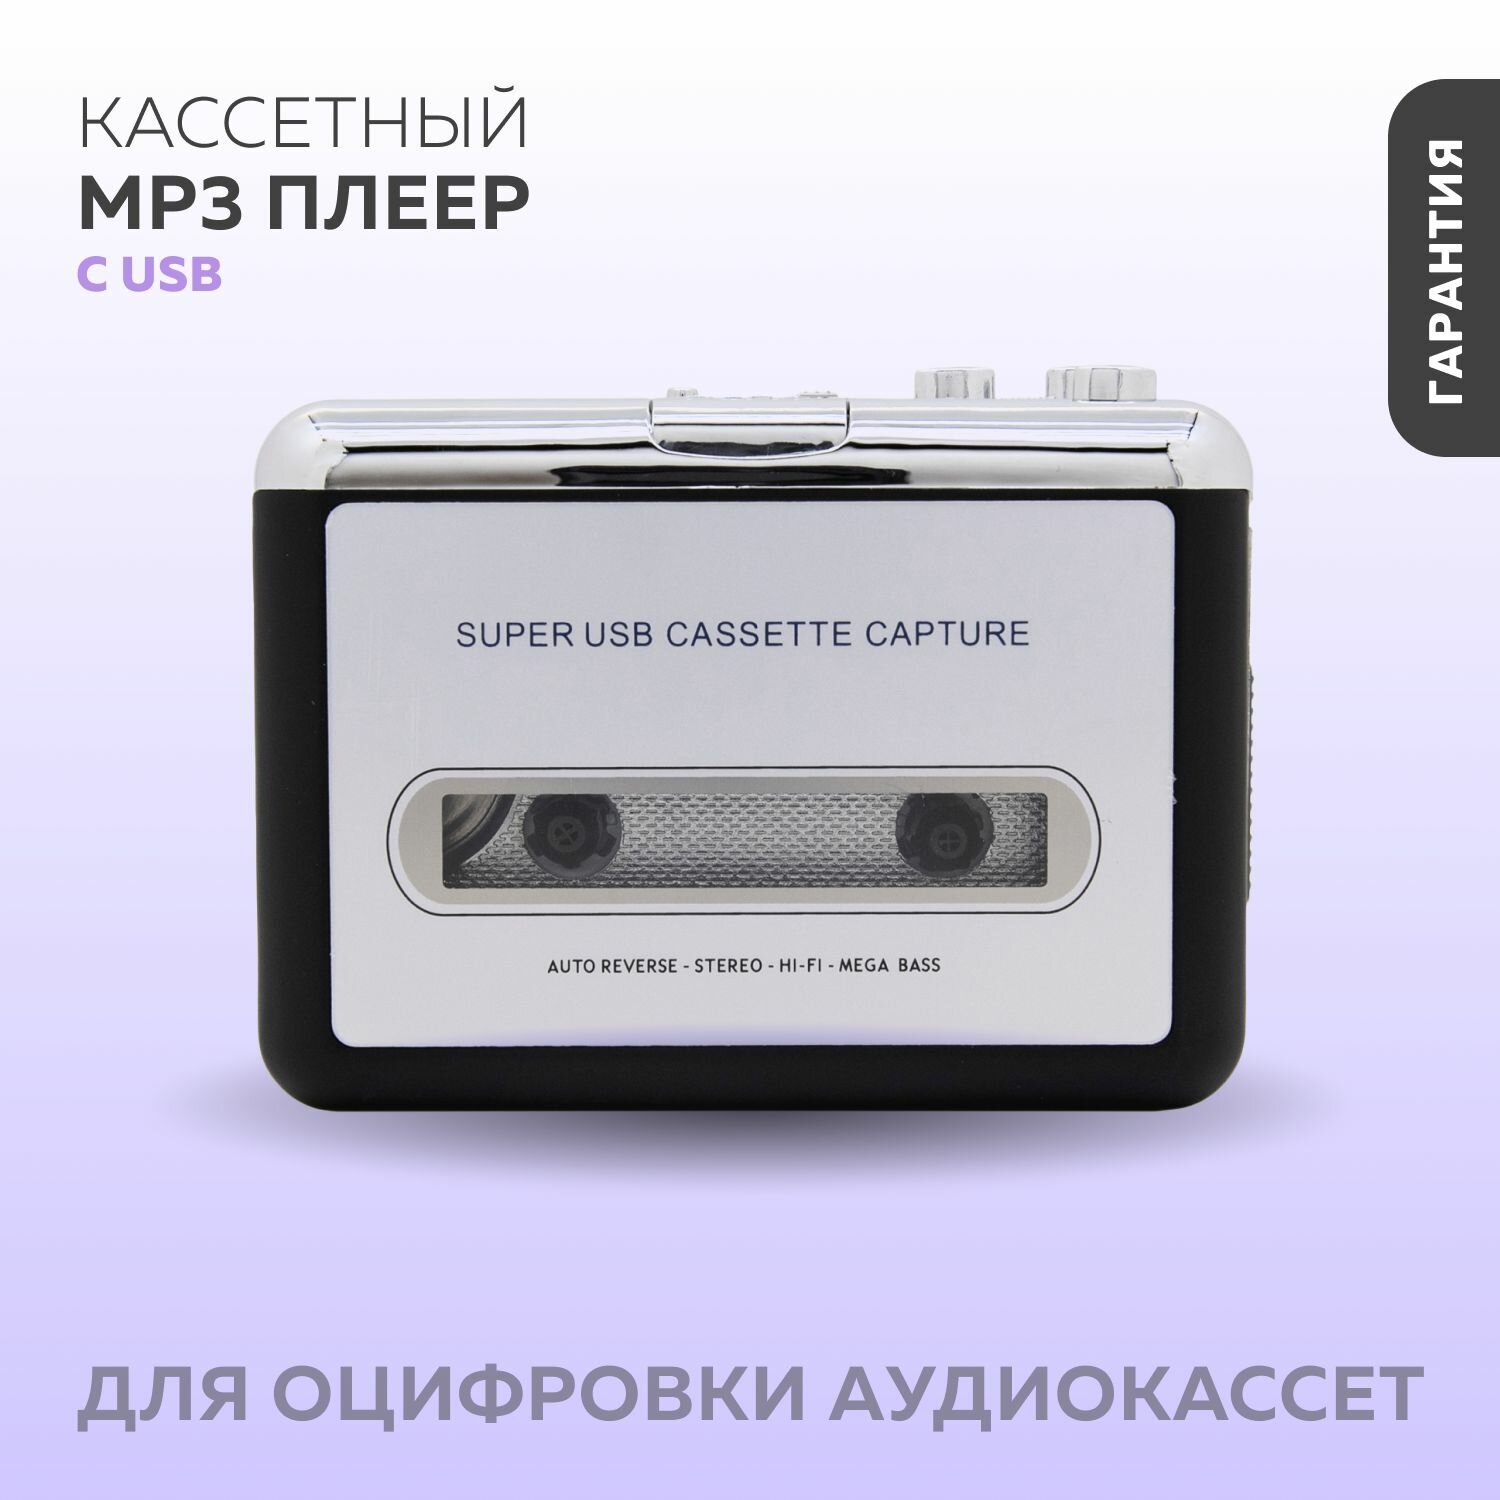 Плеер MP3 для оцифровки аудиокассет с USB / Кассетный MP3 плеер